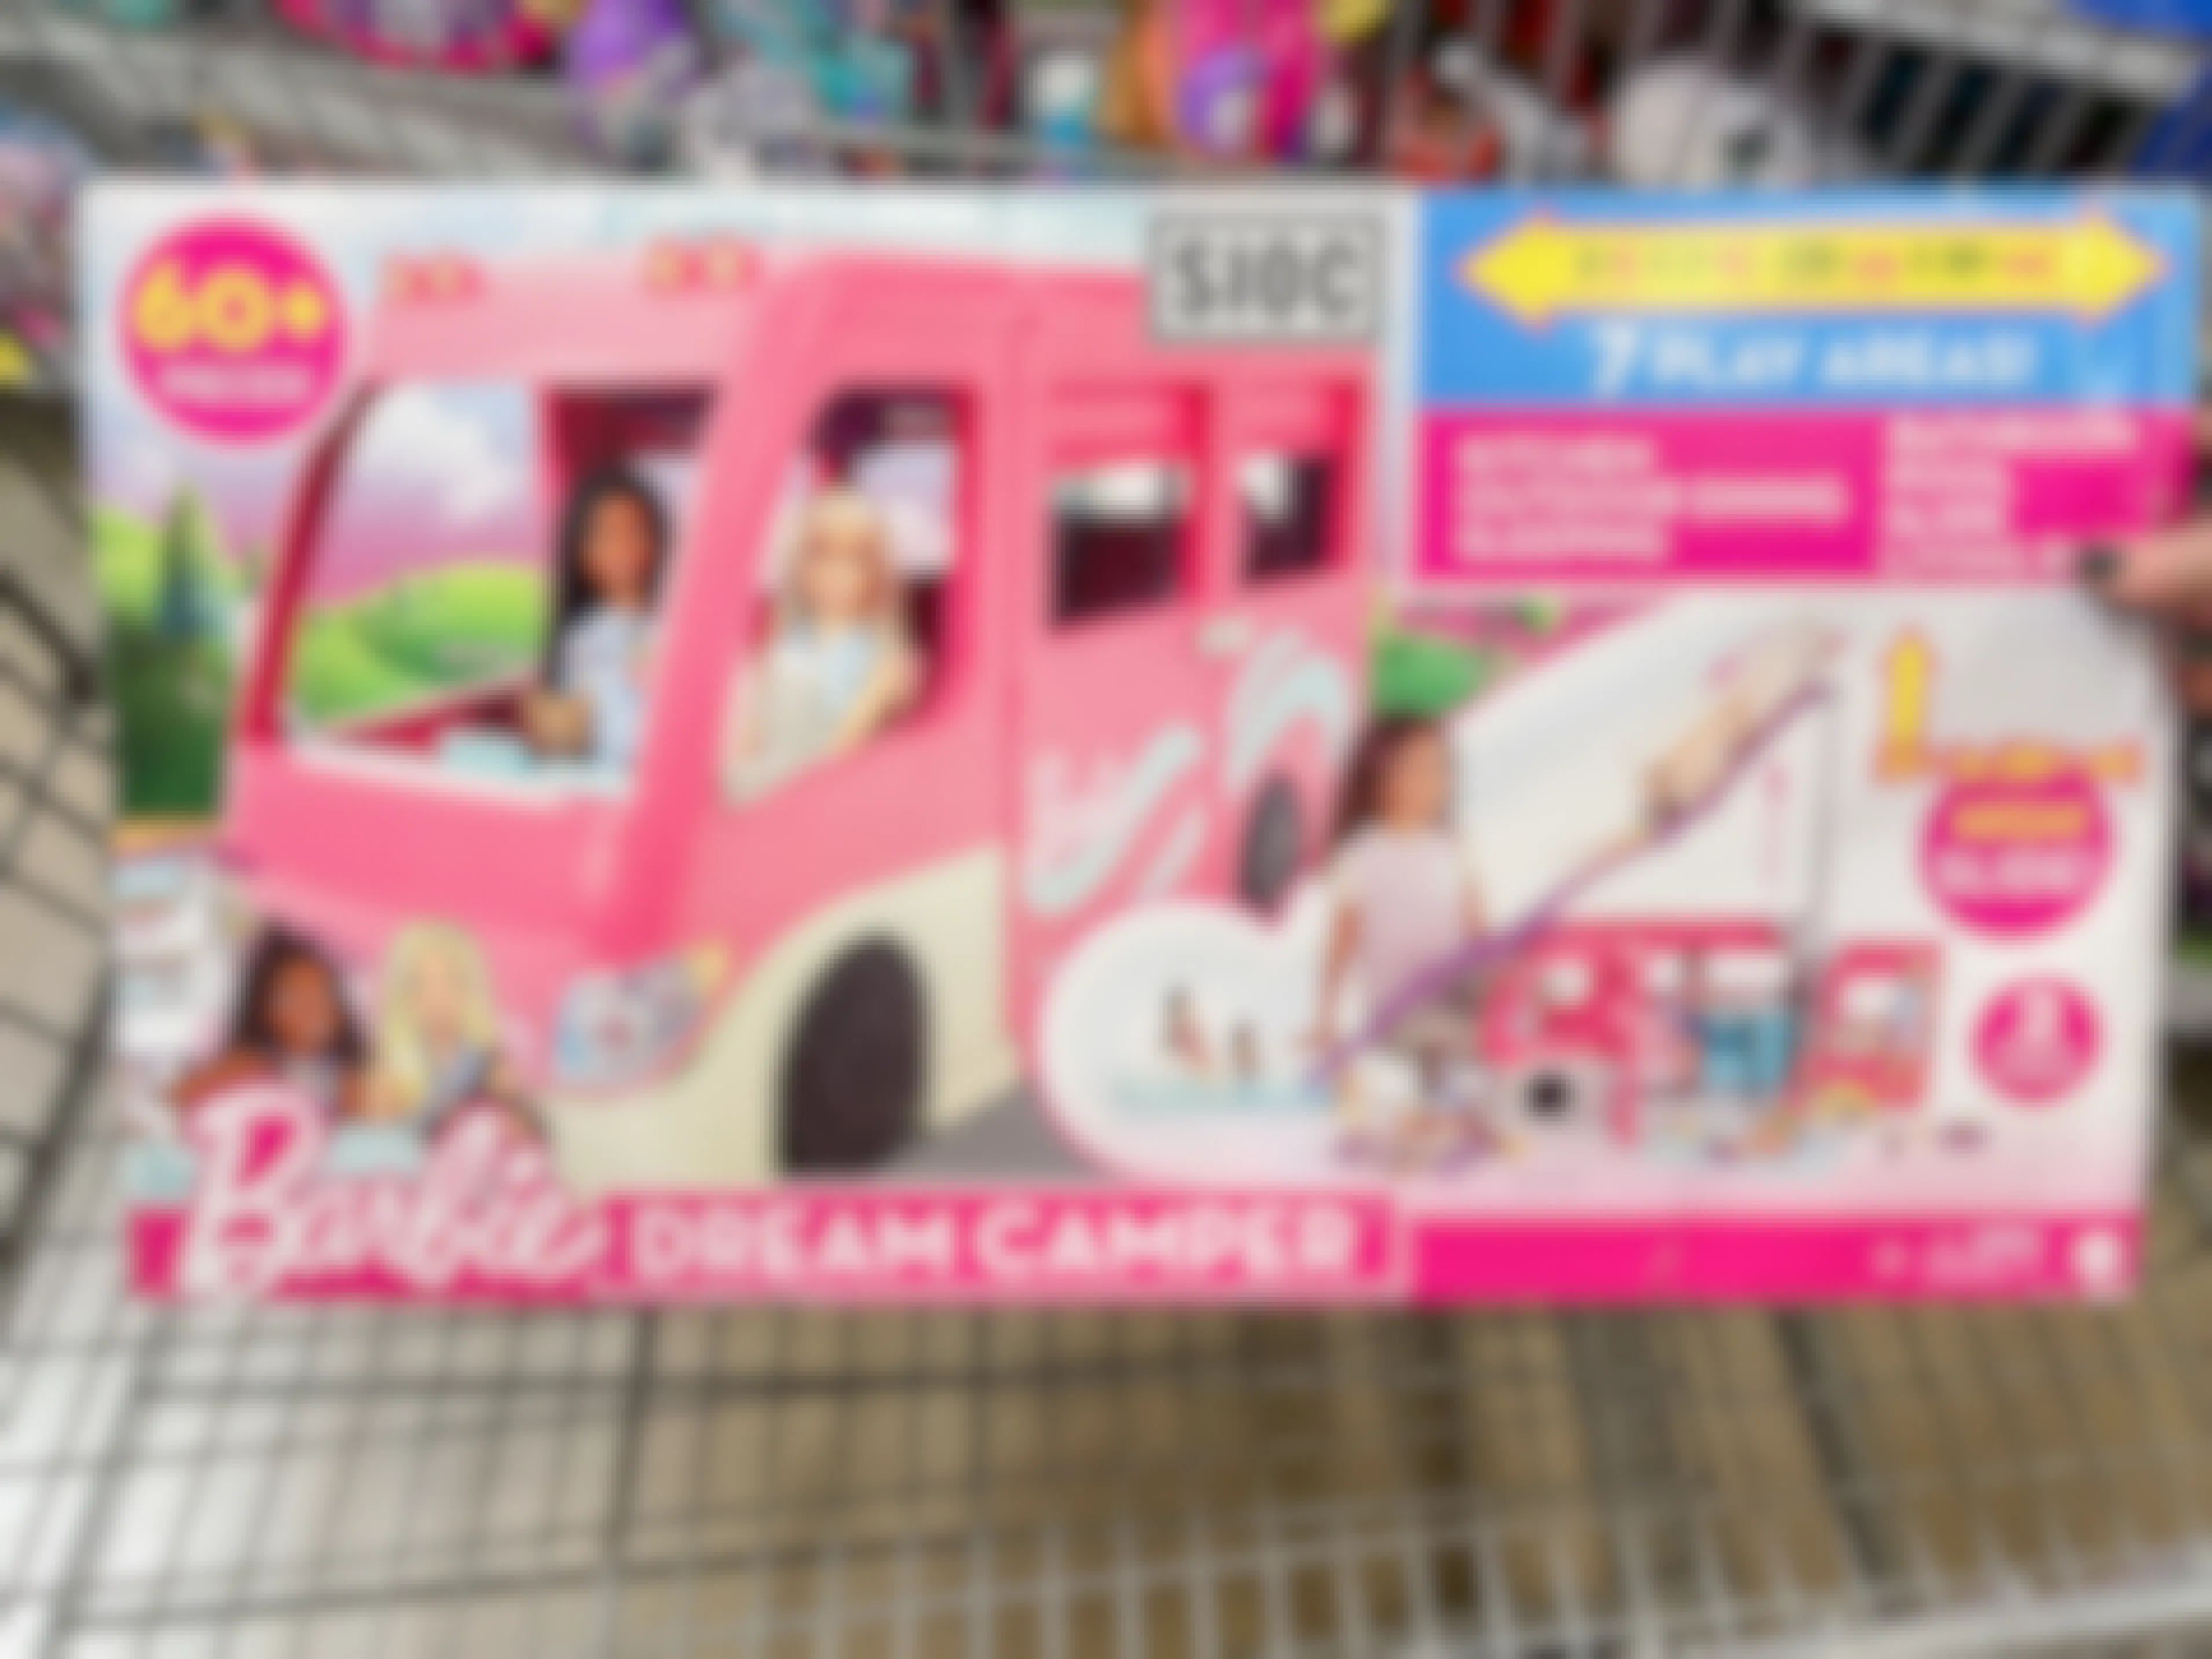 A Barbie DreamCamper set in a shopping cart.